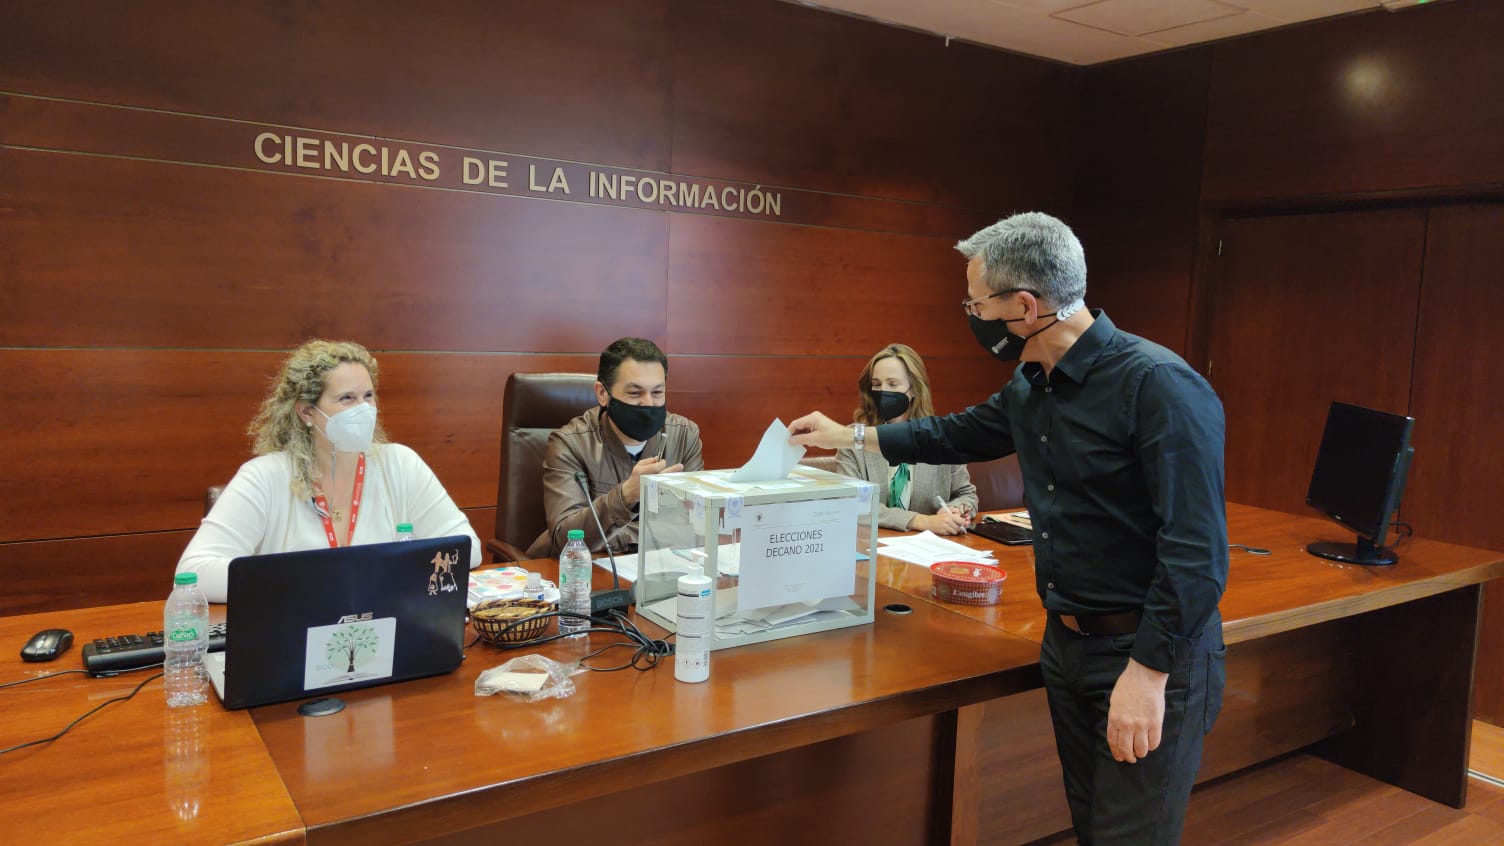 El profesor Jorge Clemente Mediavilla reelegido Decano de la Facultad de Ciencias de la Información 